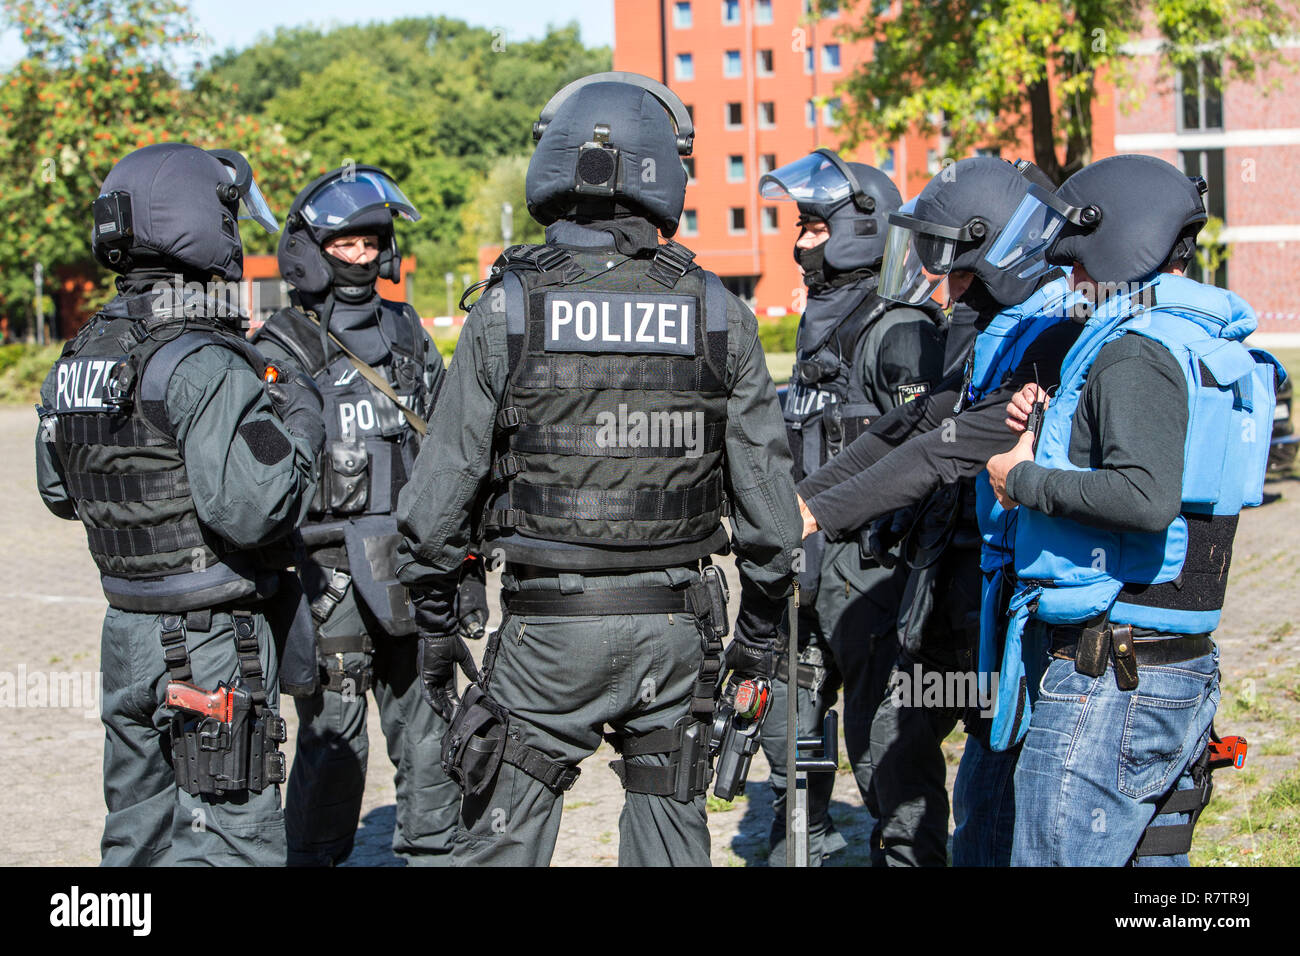 Spezialeinsatzkommandos, SEK, la speciale unità di risposta dello Stato tedesco le forze di polizia, con armi non in grado di sparare, Foto Stock